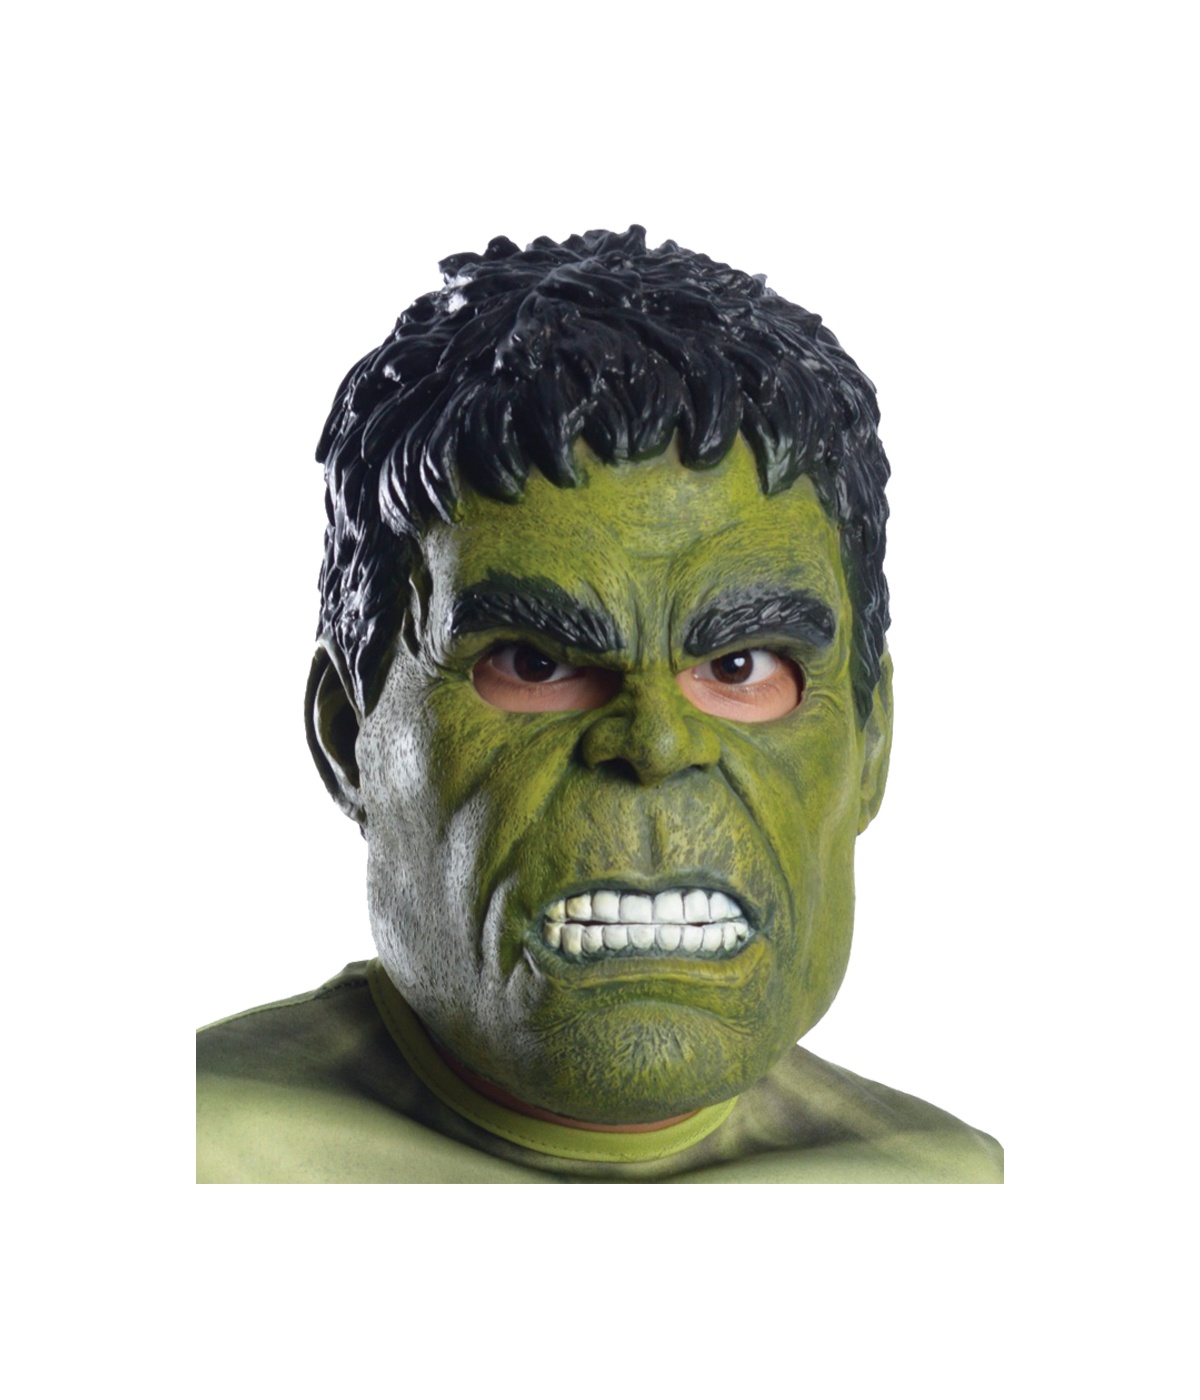  Ultron Hulk Child Mask